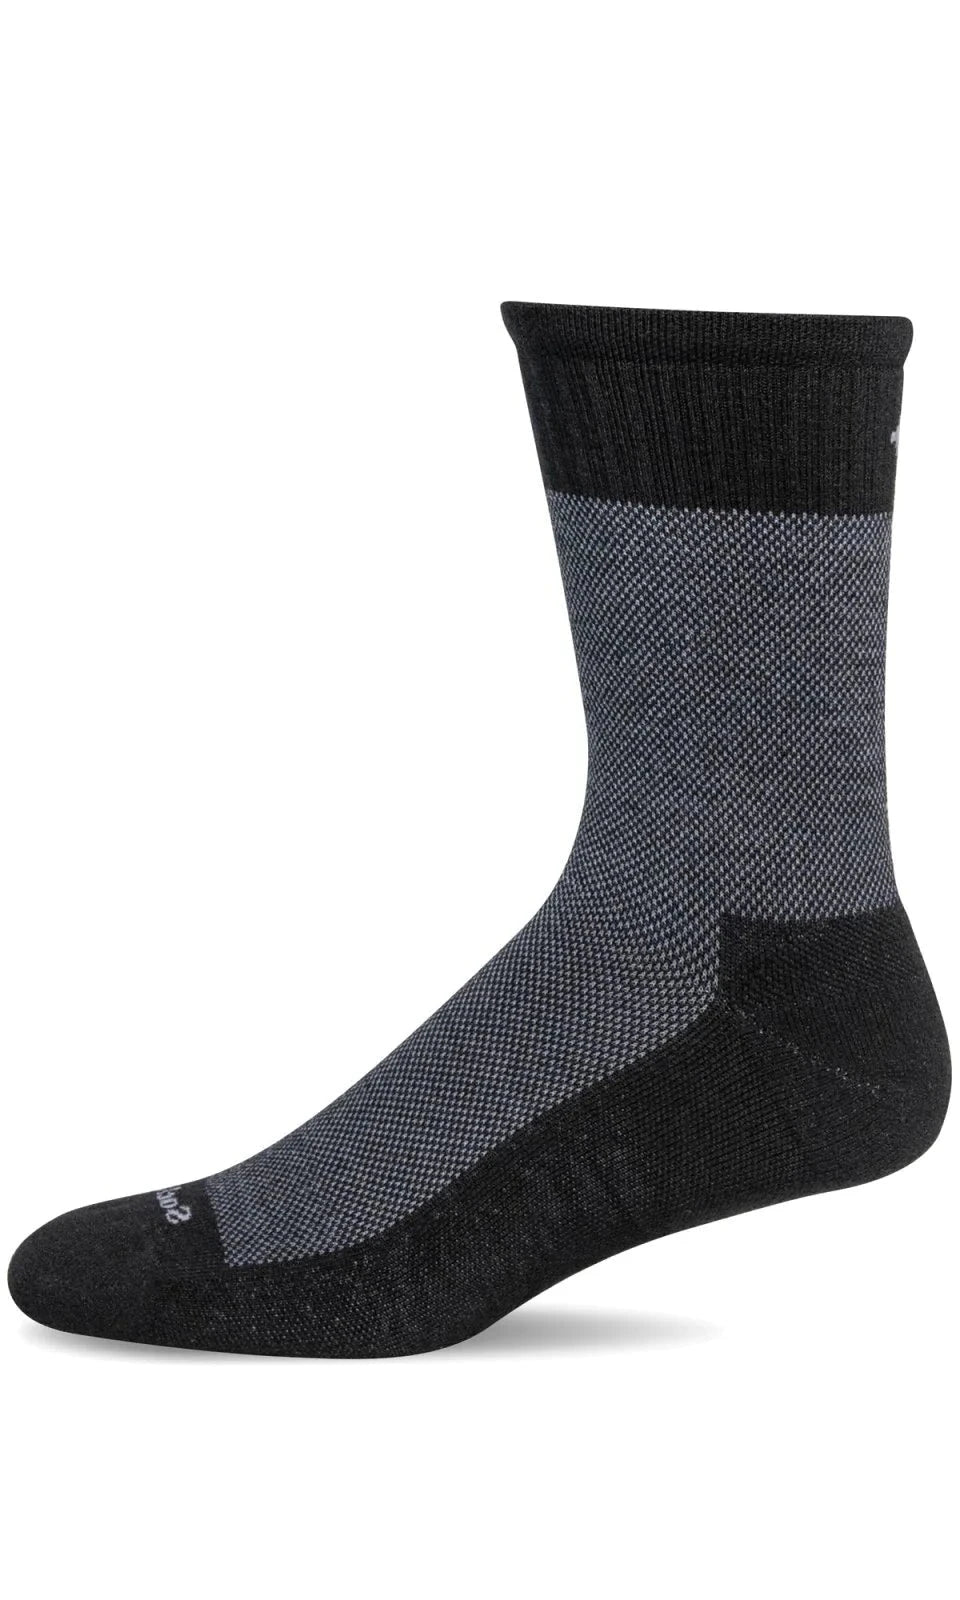 Foothold II | Compression | Men | Black - Socks - Sockwell